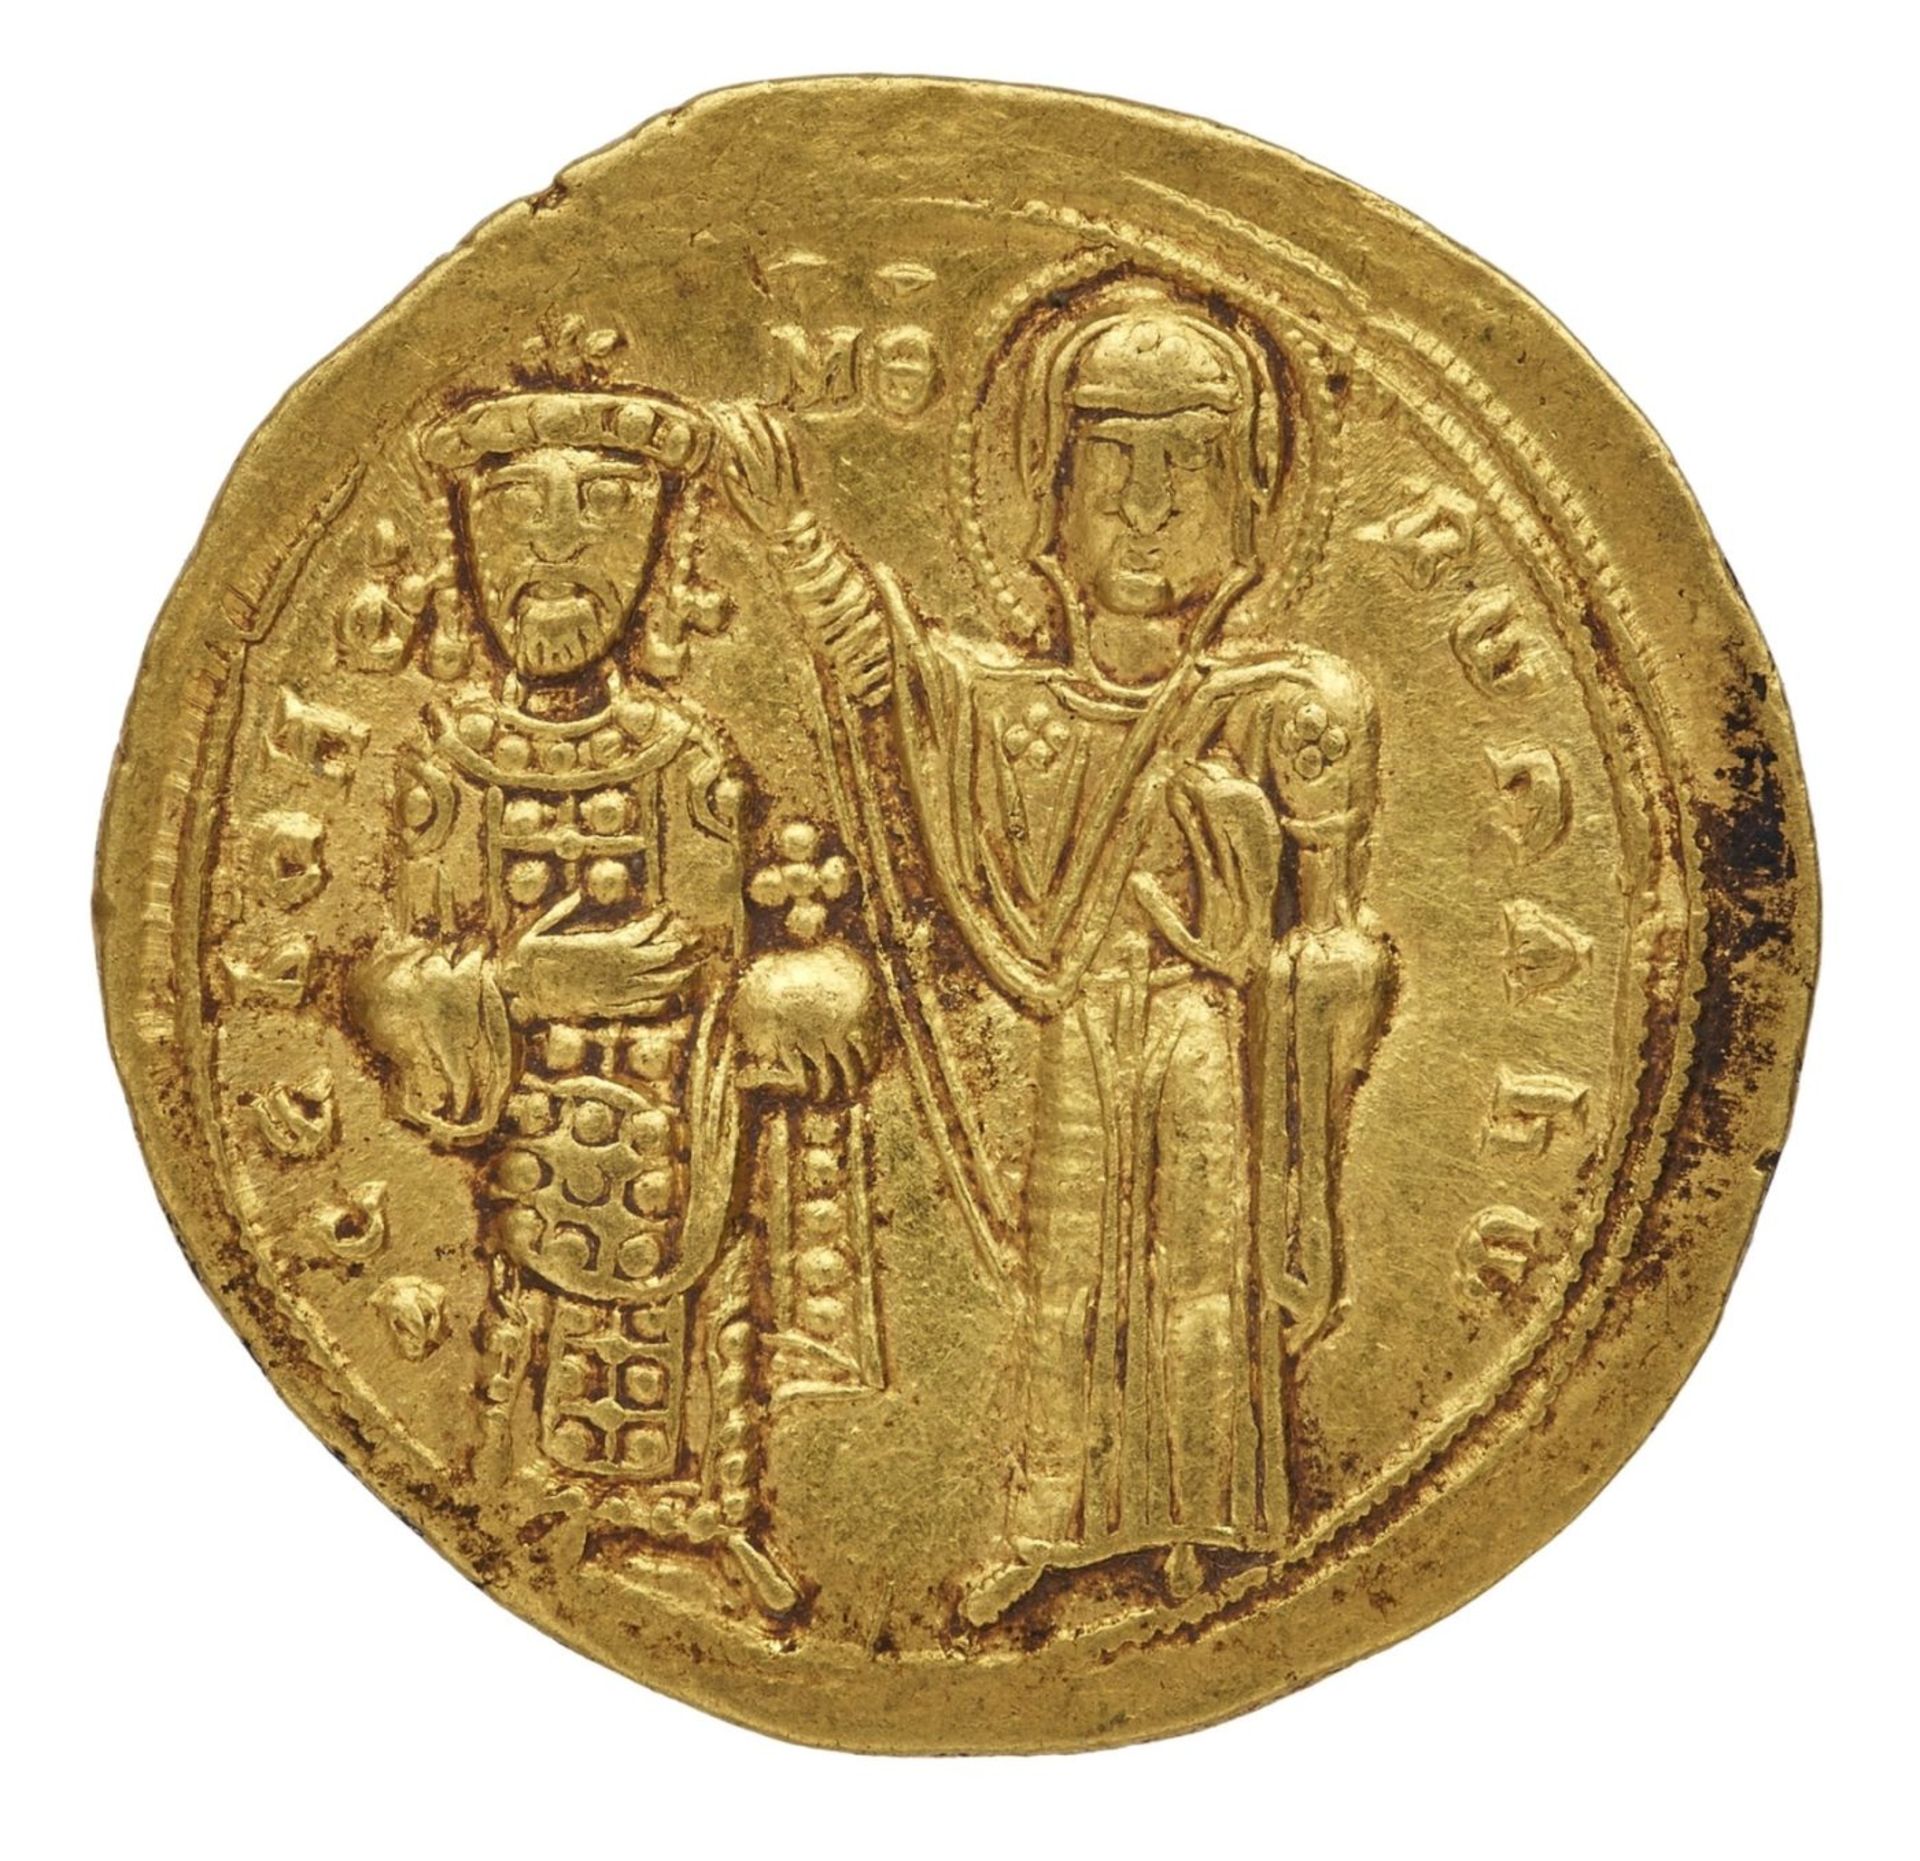 Antike Goldmünze, Histamenon, Kaiser Romanus III., Byzanz 1028-1034 - Bild 2 aus 2